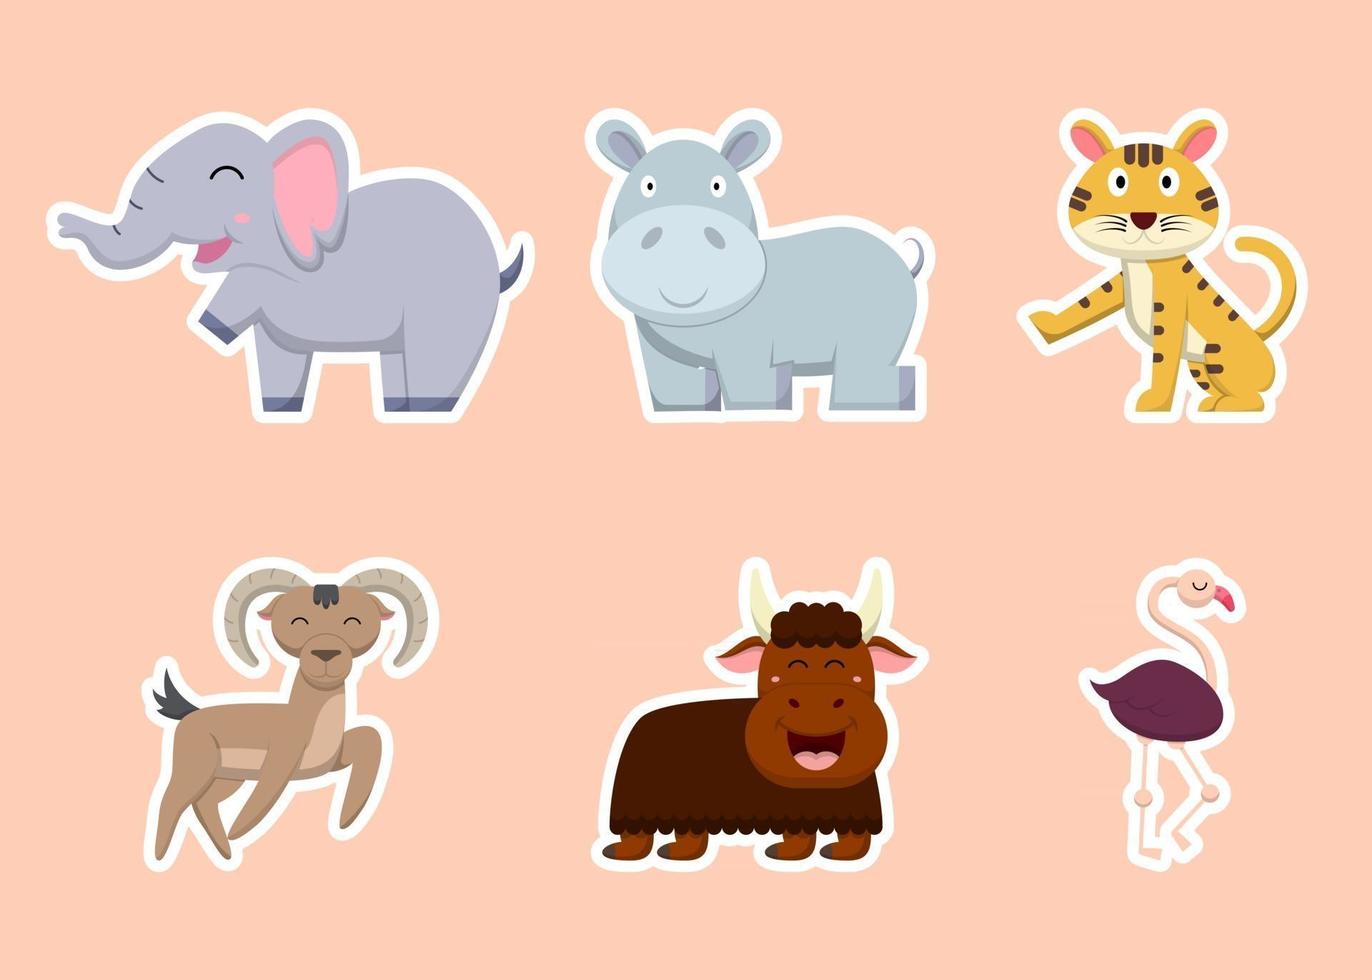 Paquete de personajes de dibujos animados de animales lindos aislados ilustración vectorial plana vector